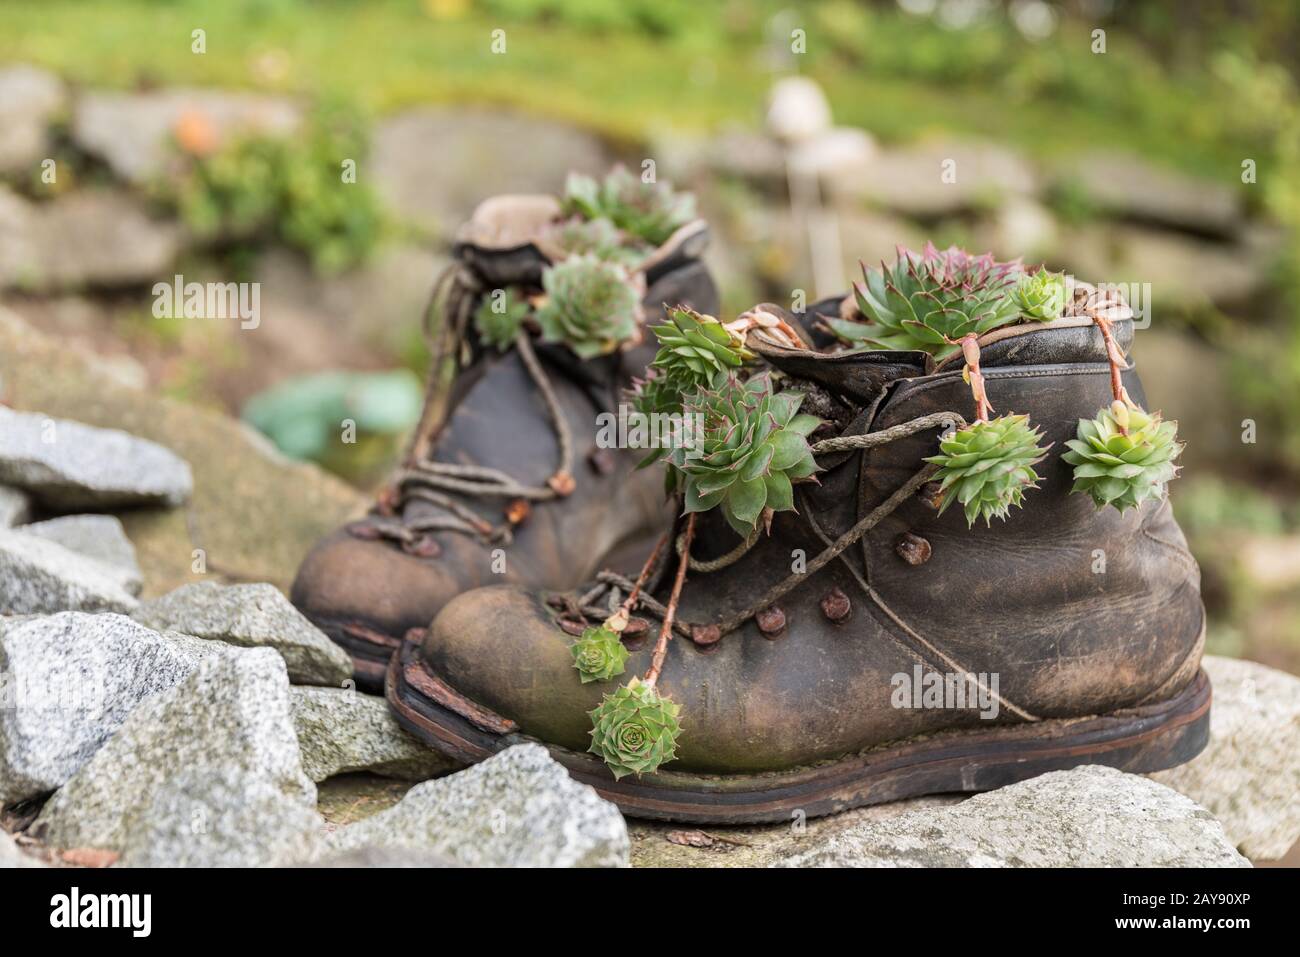 Hombre montaña escalada Alpes botas casco detalle Fotografía de stock -  Alamy